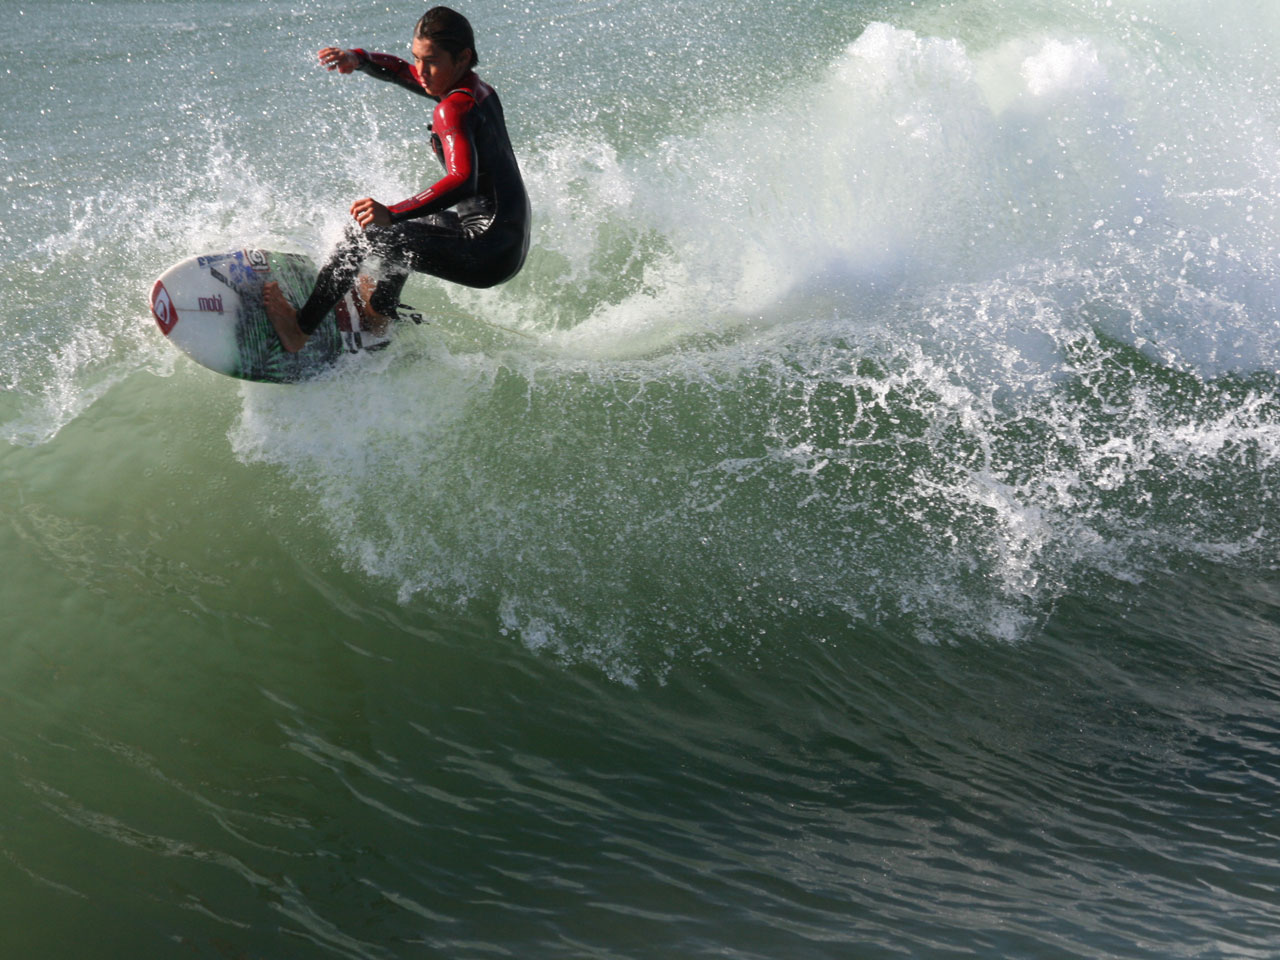 Surfer carves la wavecrest